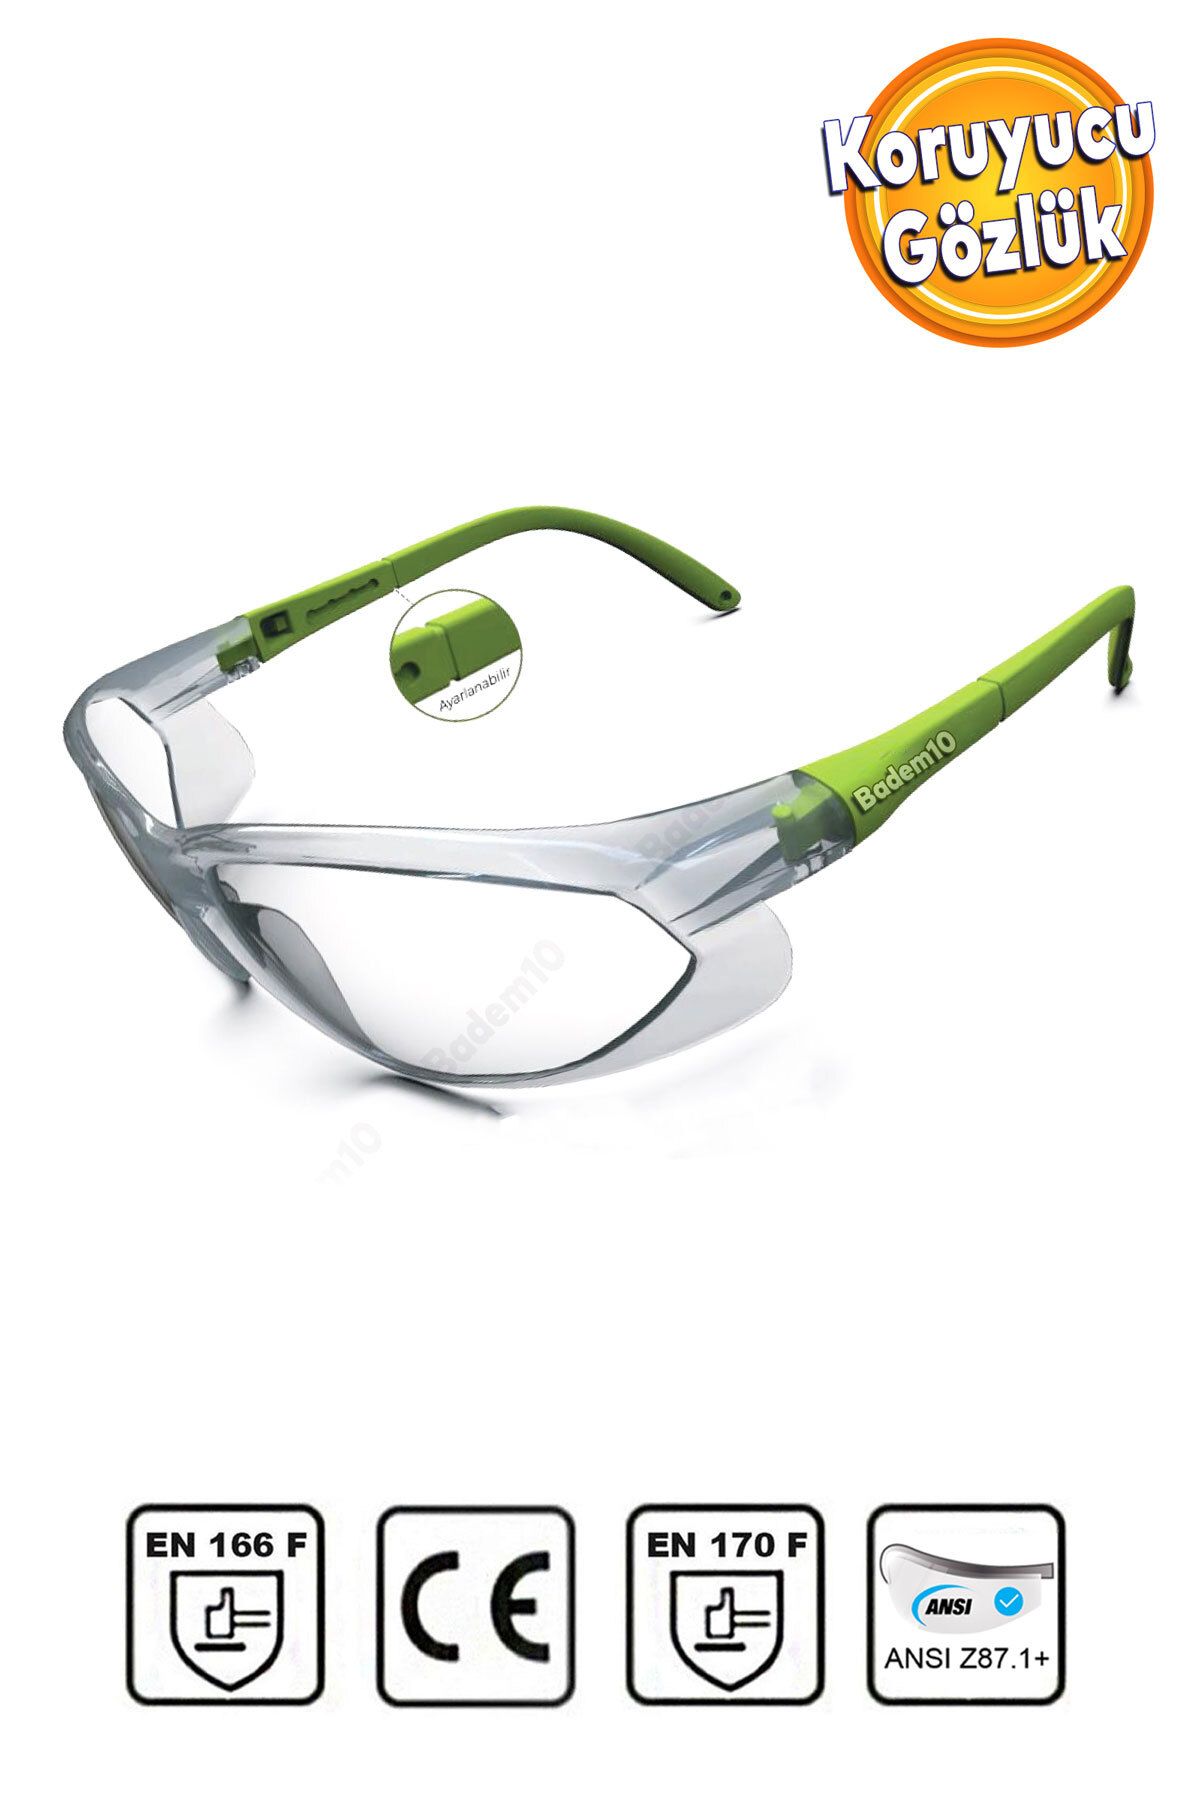 Badem10 İş Güvenlik Güvenliği Gözlüğü Kulak Ayarlı Toz Koruyucu Göz Koruma Gözlüğü Gözlük Şeffaf S900